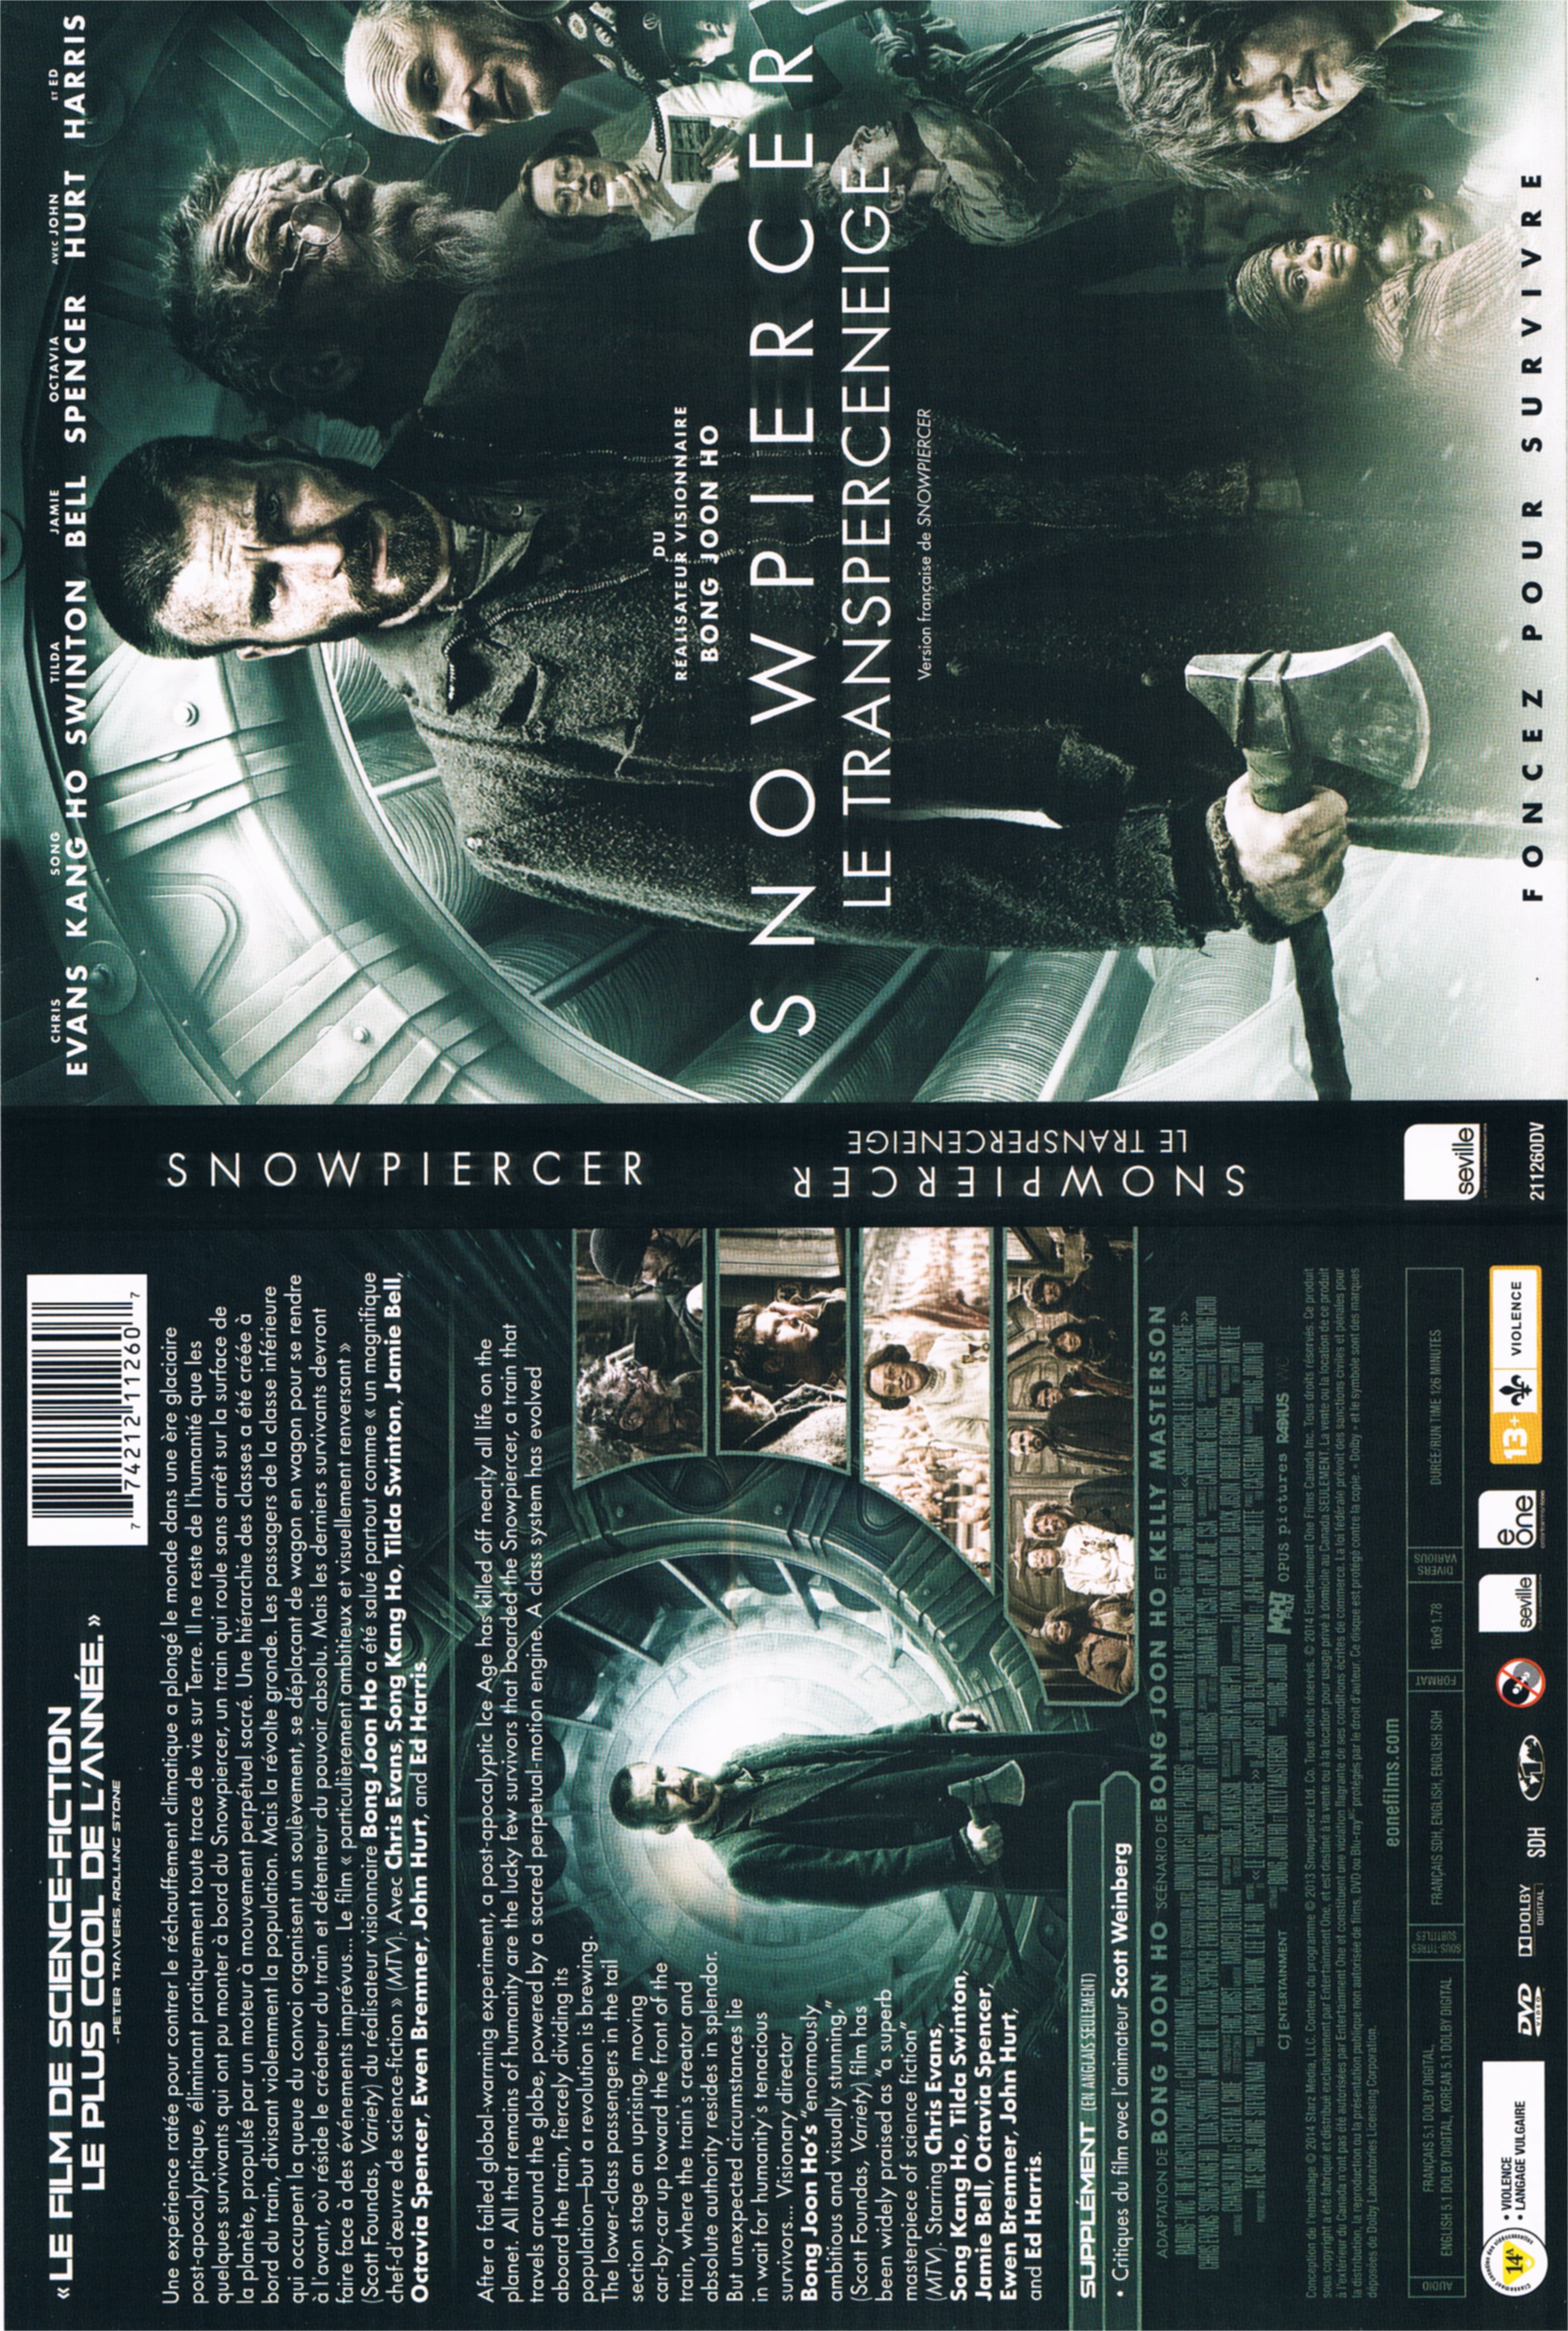 Jaquette DVD Snowpiercer, Le Transperceneige (Canadienne)